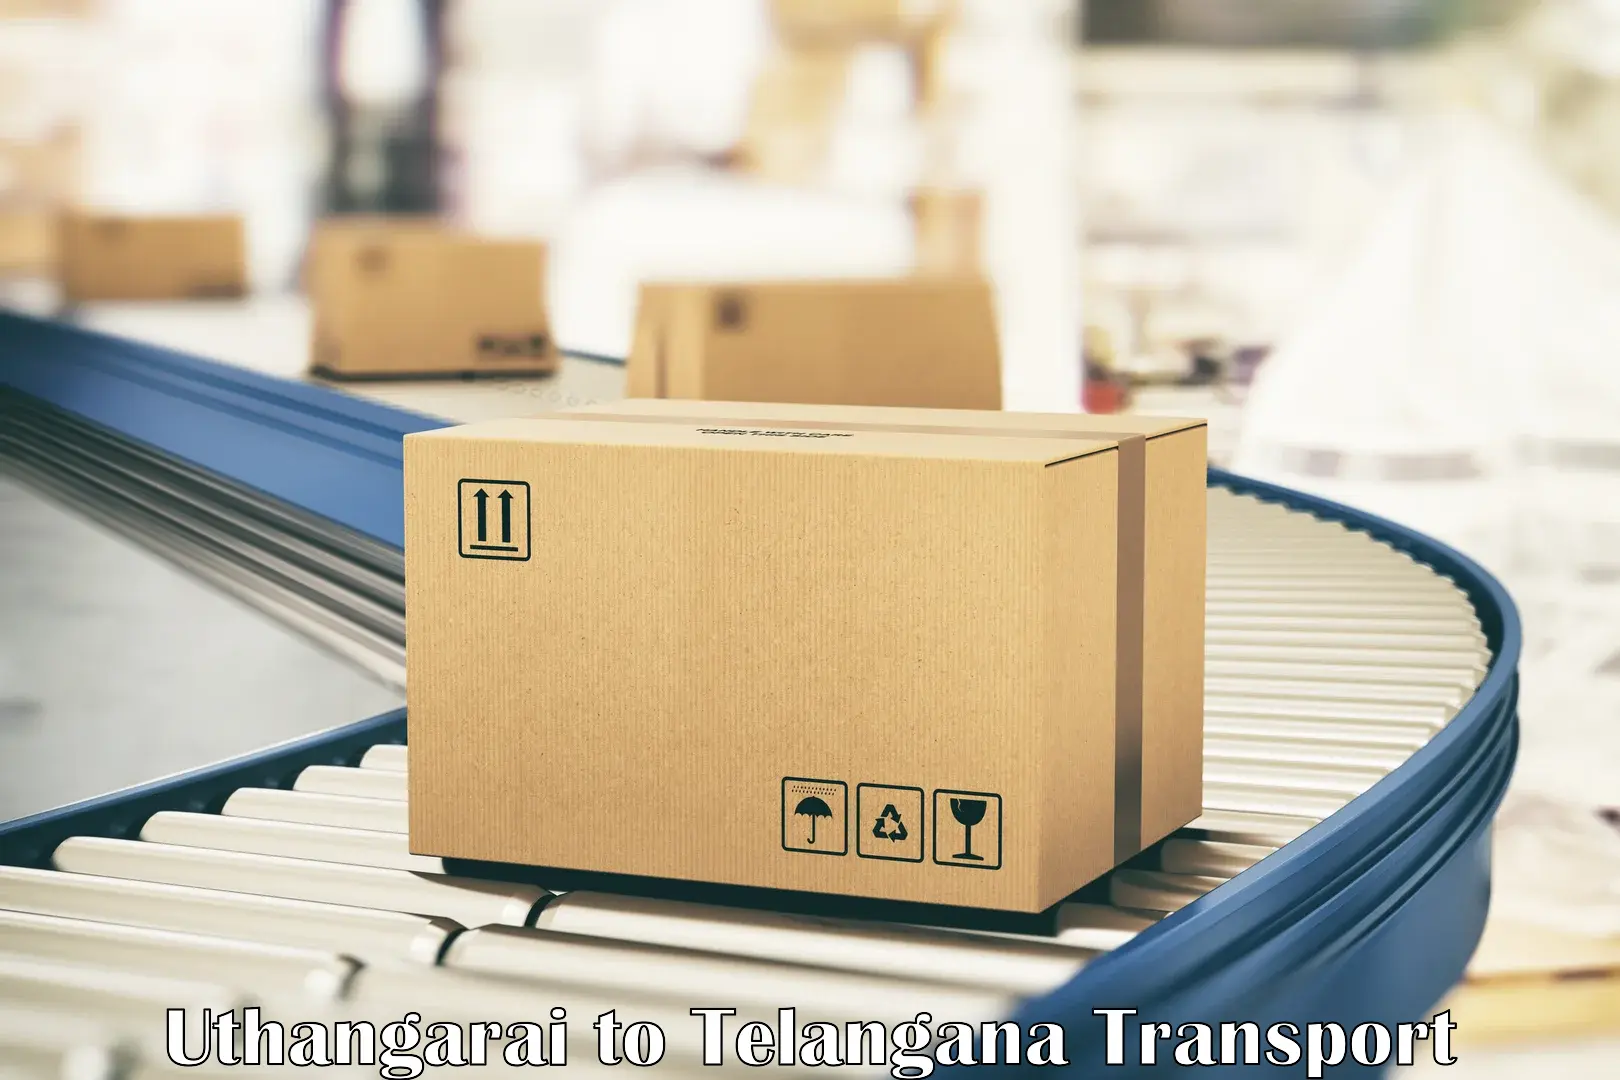 Container transport service Uthangarai to Chegunta